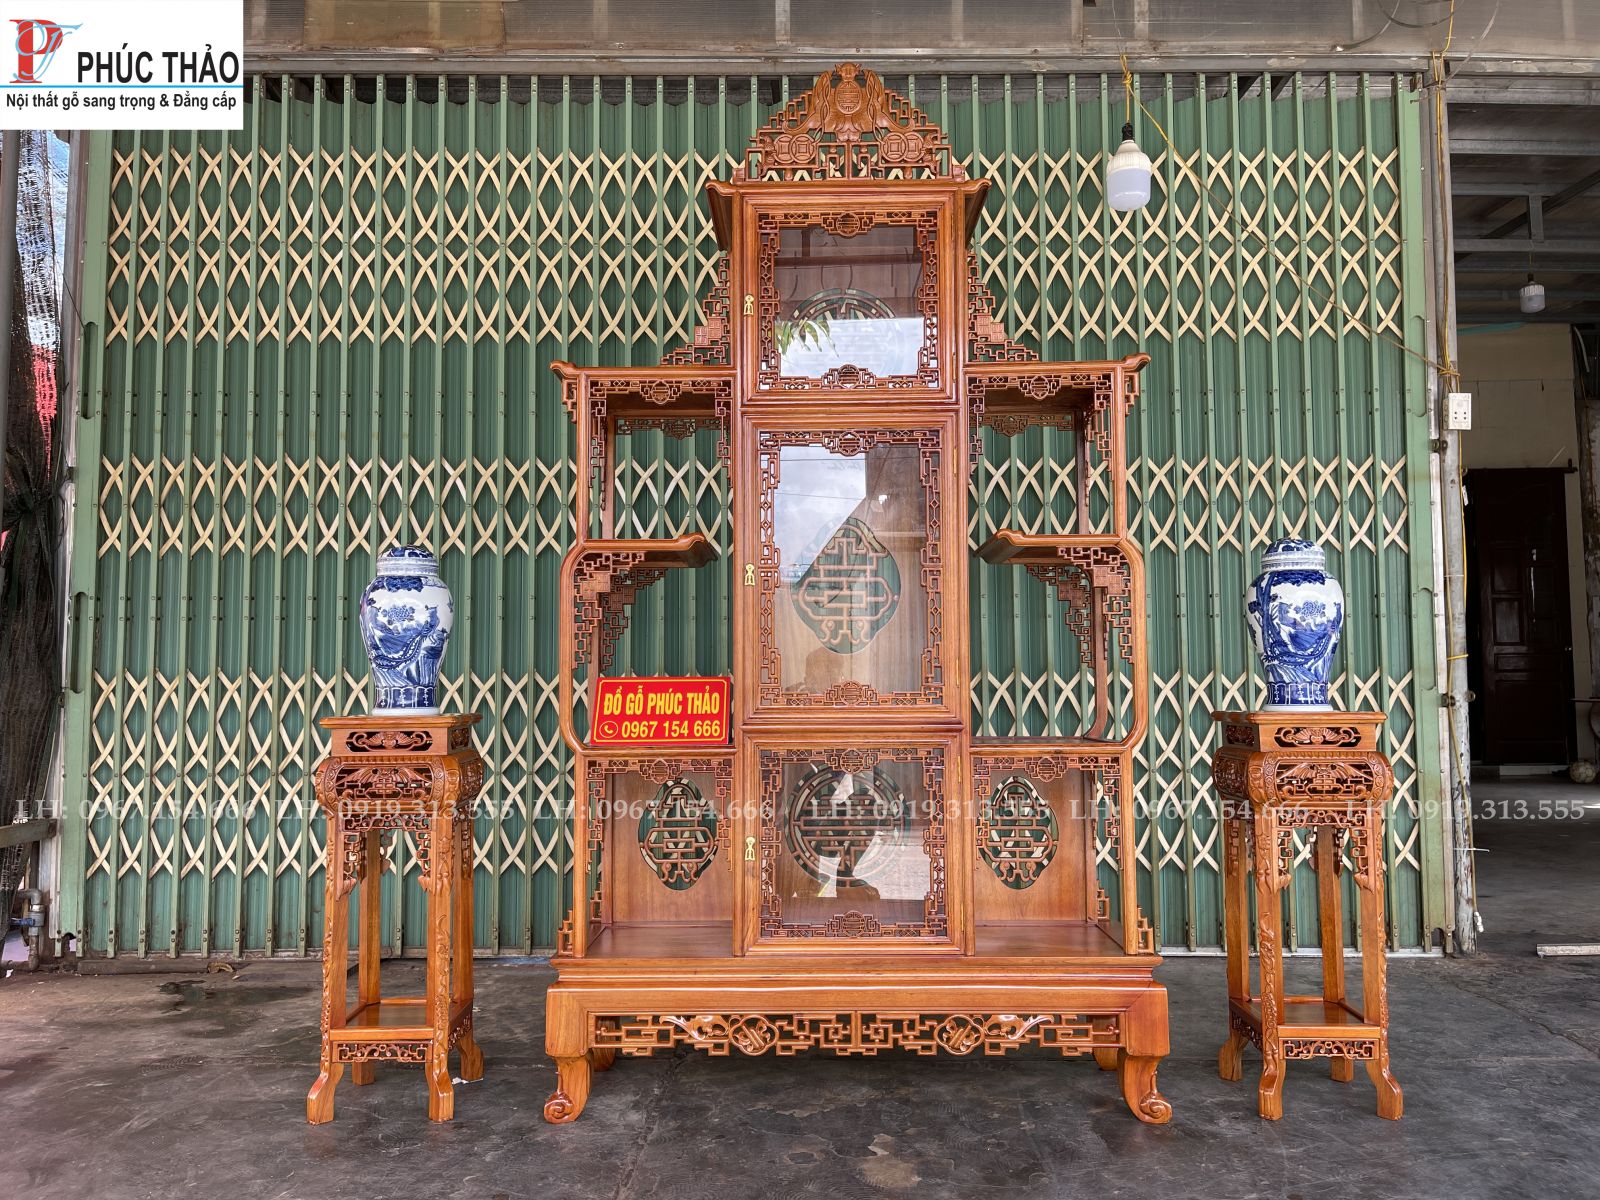 Cơ sở Phucthao.vn địa chỉ bán tủ bày đồ gốm sứ tại Thanh Hóa